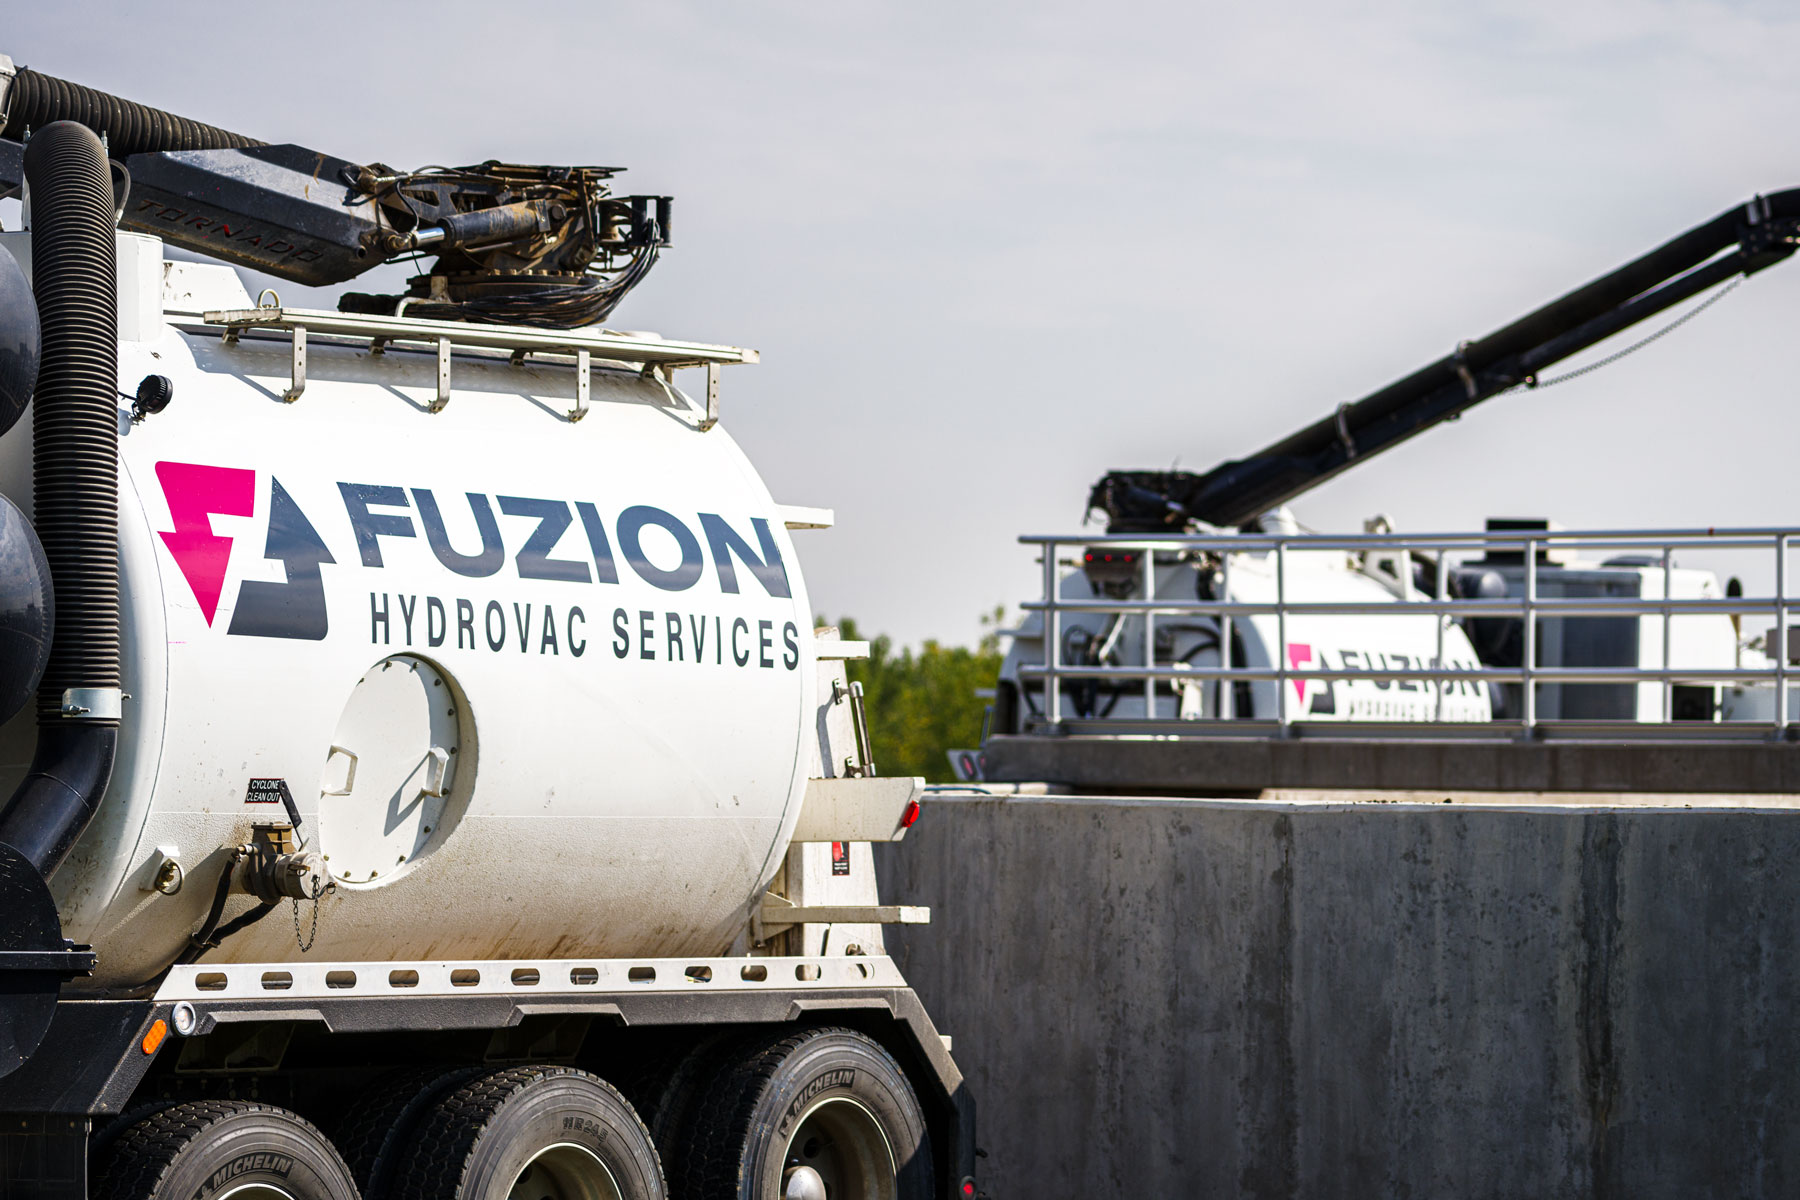 Hydrovac Services - Fuzion